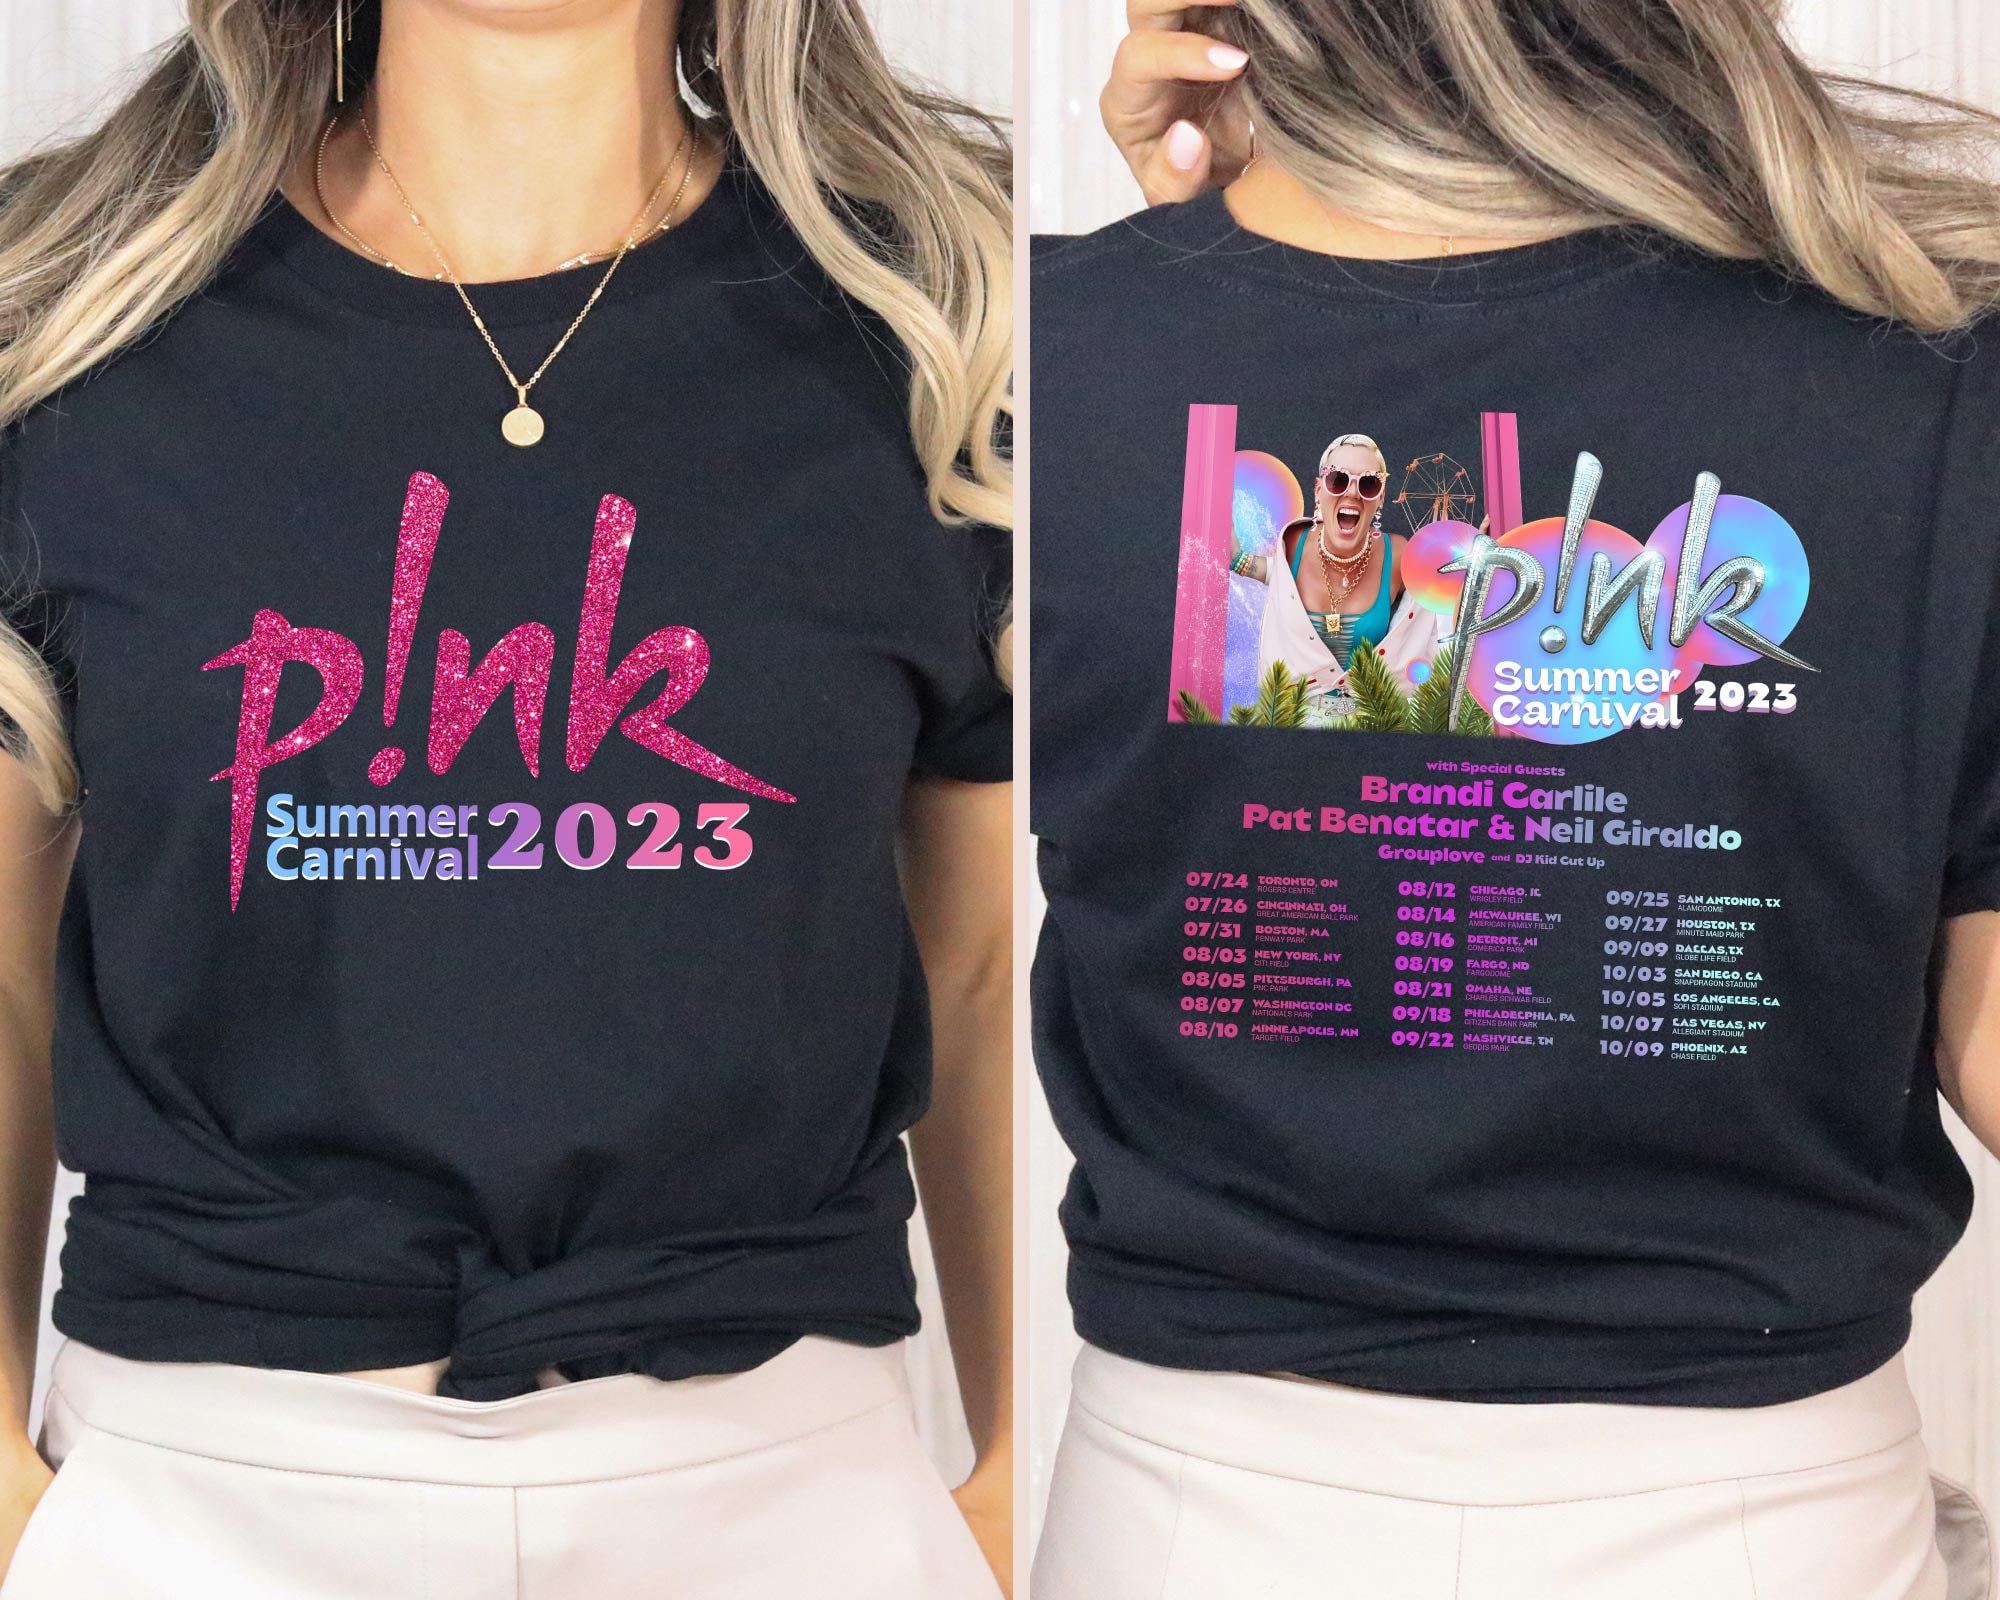 Danna Paola Singer Tour Dates USA Shirt Unisex Cotton S-5XL Black